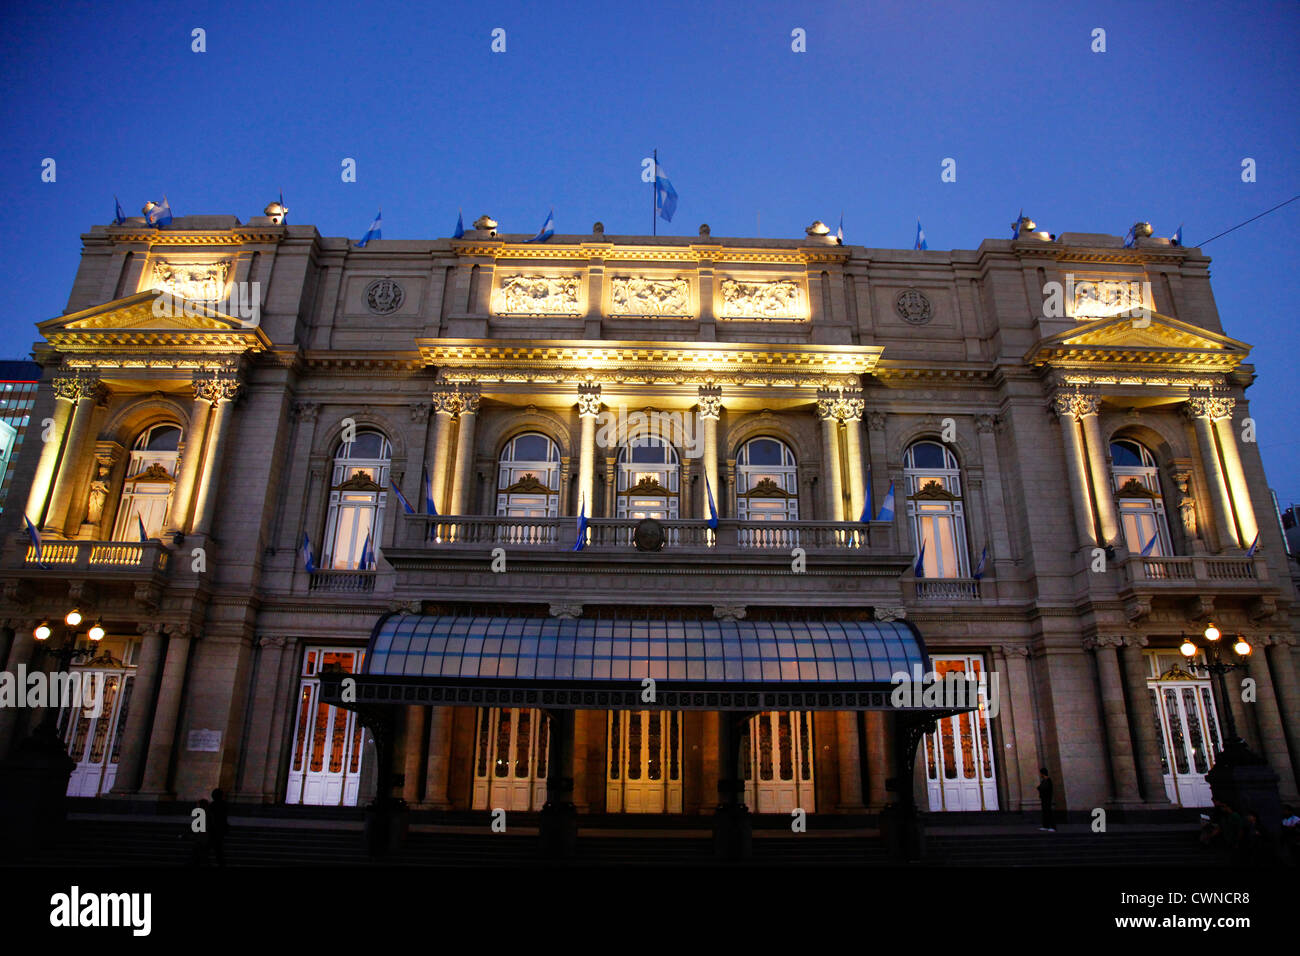 Facade of Teatro Colon, Buenos Aires, Argentina. Stock Photo